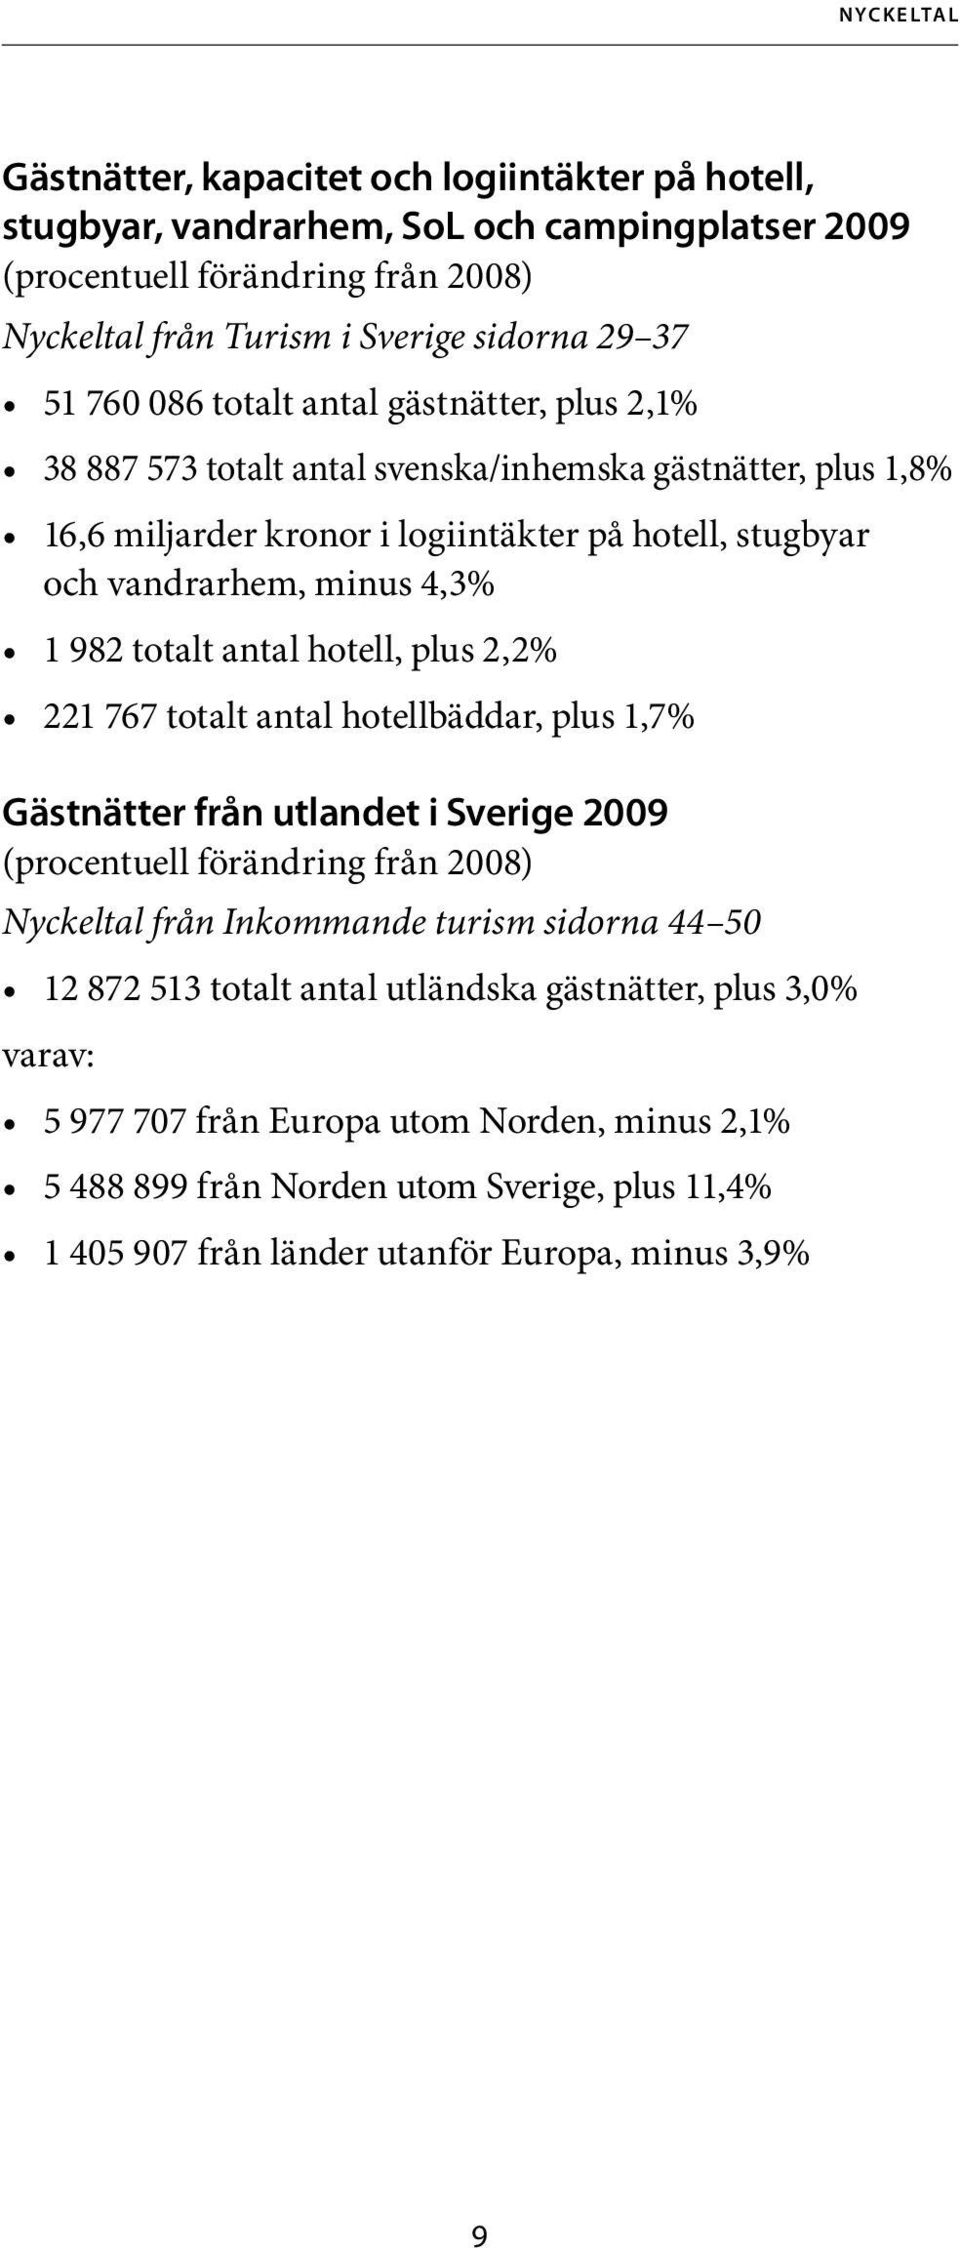 totalt antal hotell, plus 2,2% 221 767 totalt antal hotellbäddar, plus 1,7% Gästnätter från utlandet i Sverige 2009 (procentuell förändring från 2008) Nyckeltal från Inkommande turism sidorna 44 50